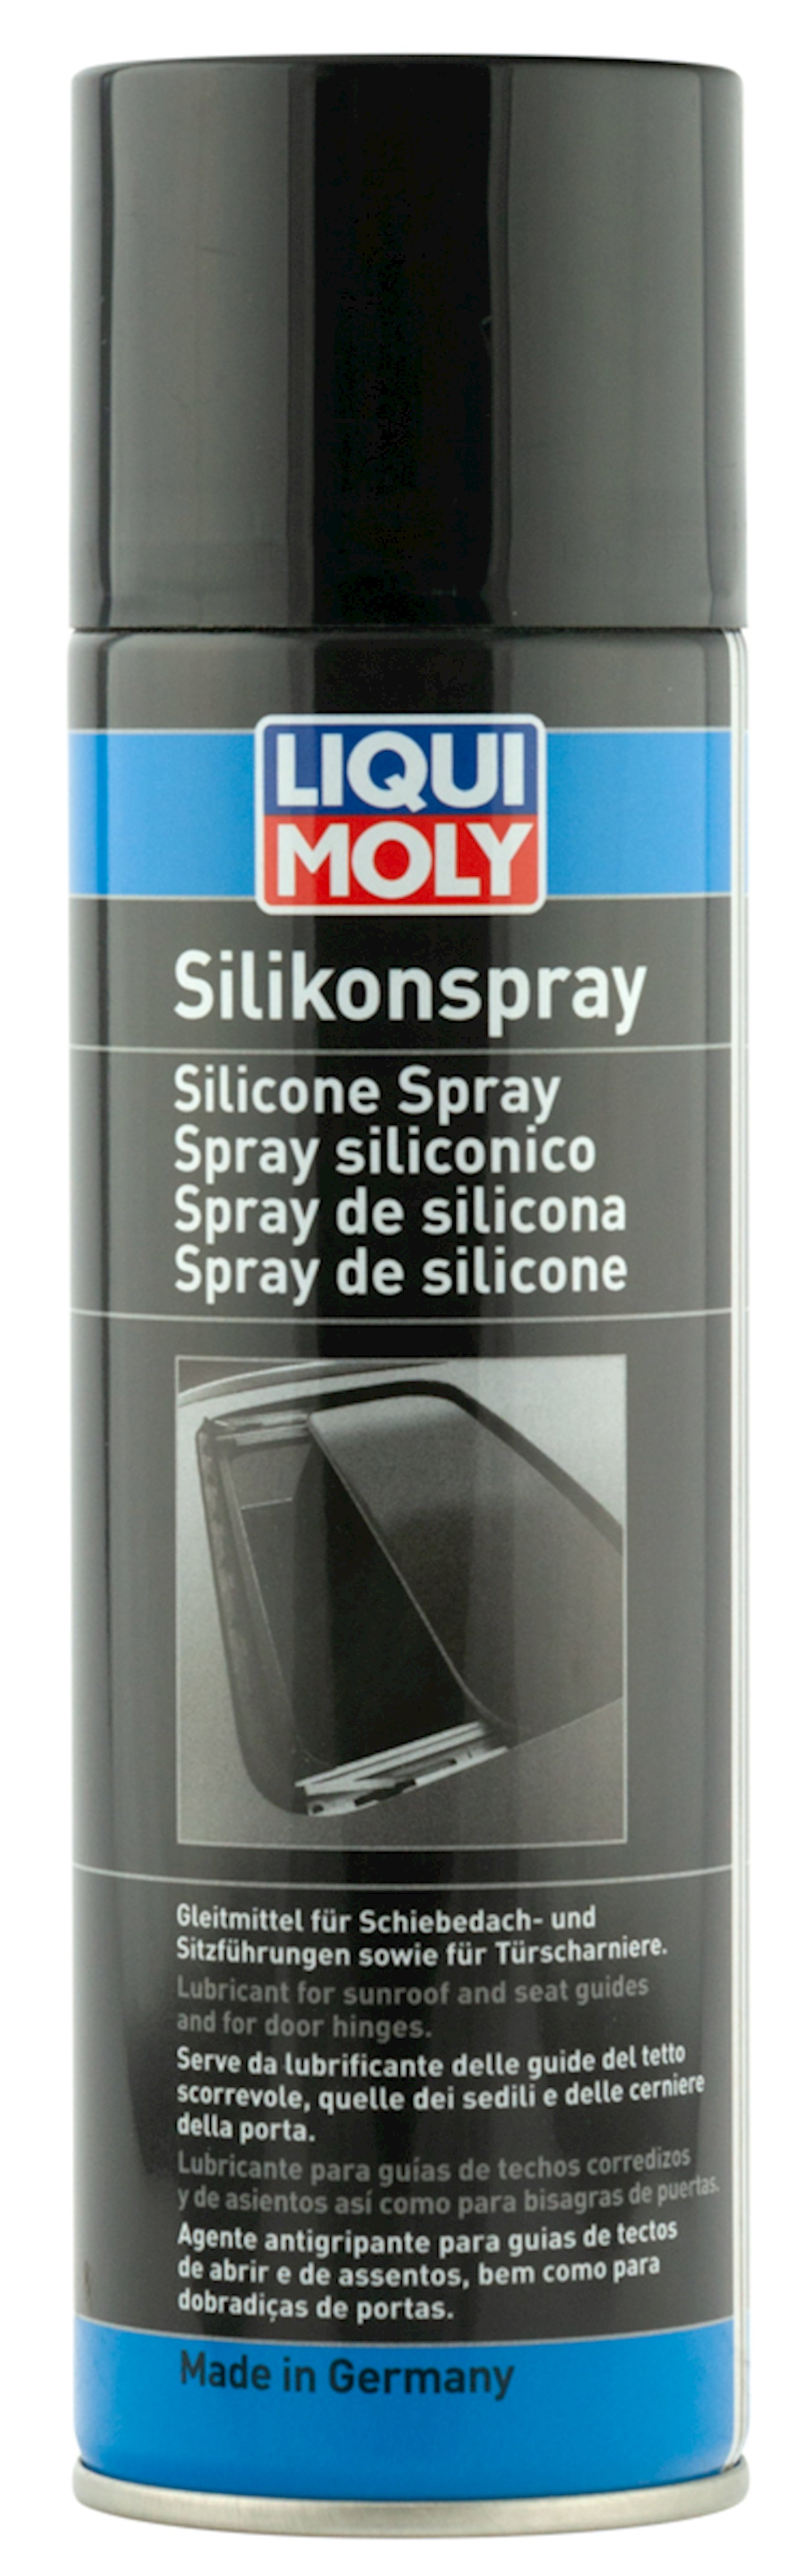 Silicone Spray (300ml): Liqui Moly 3310 -compatibility